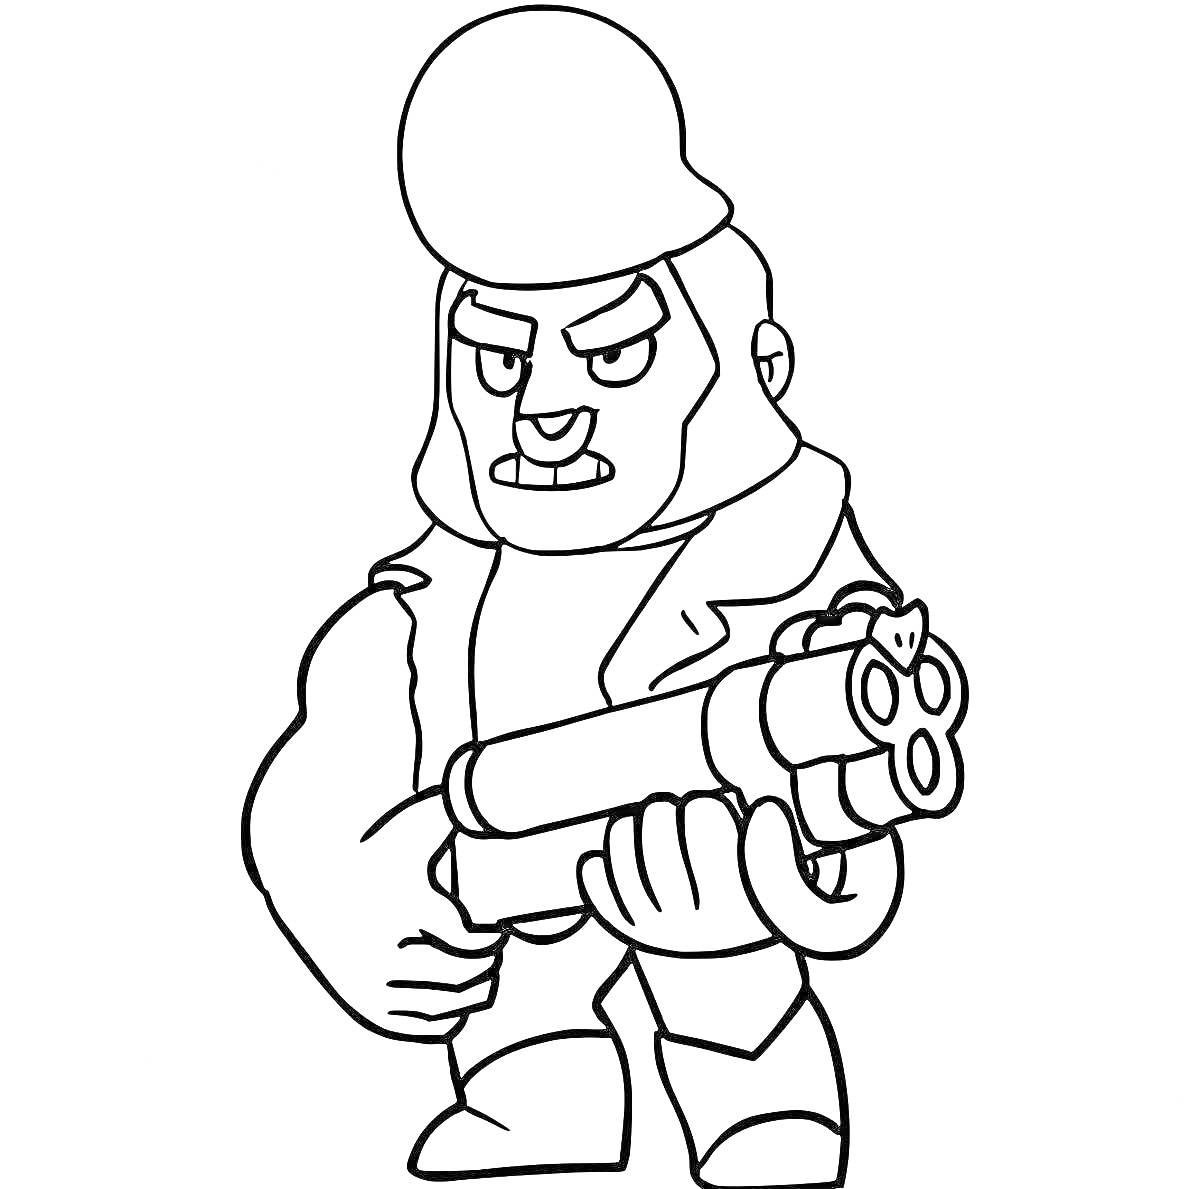 Раскраска Персонаж из игры Бравл Старс с пистолетом